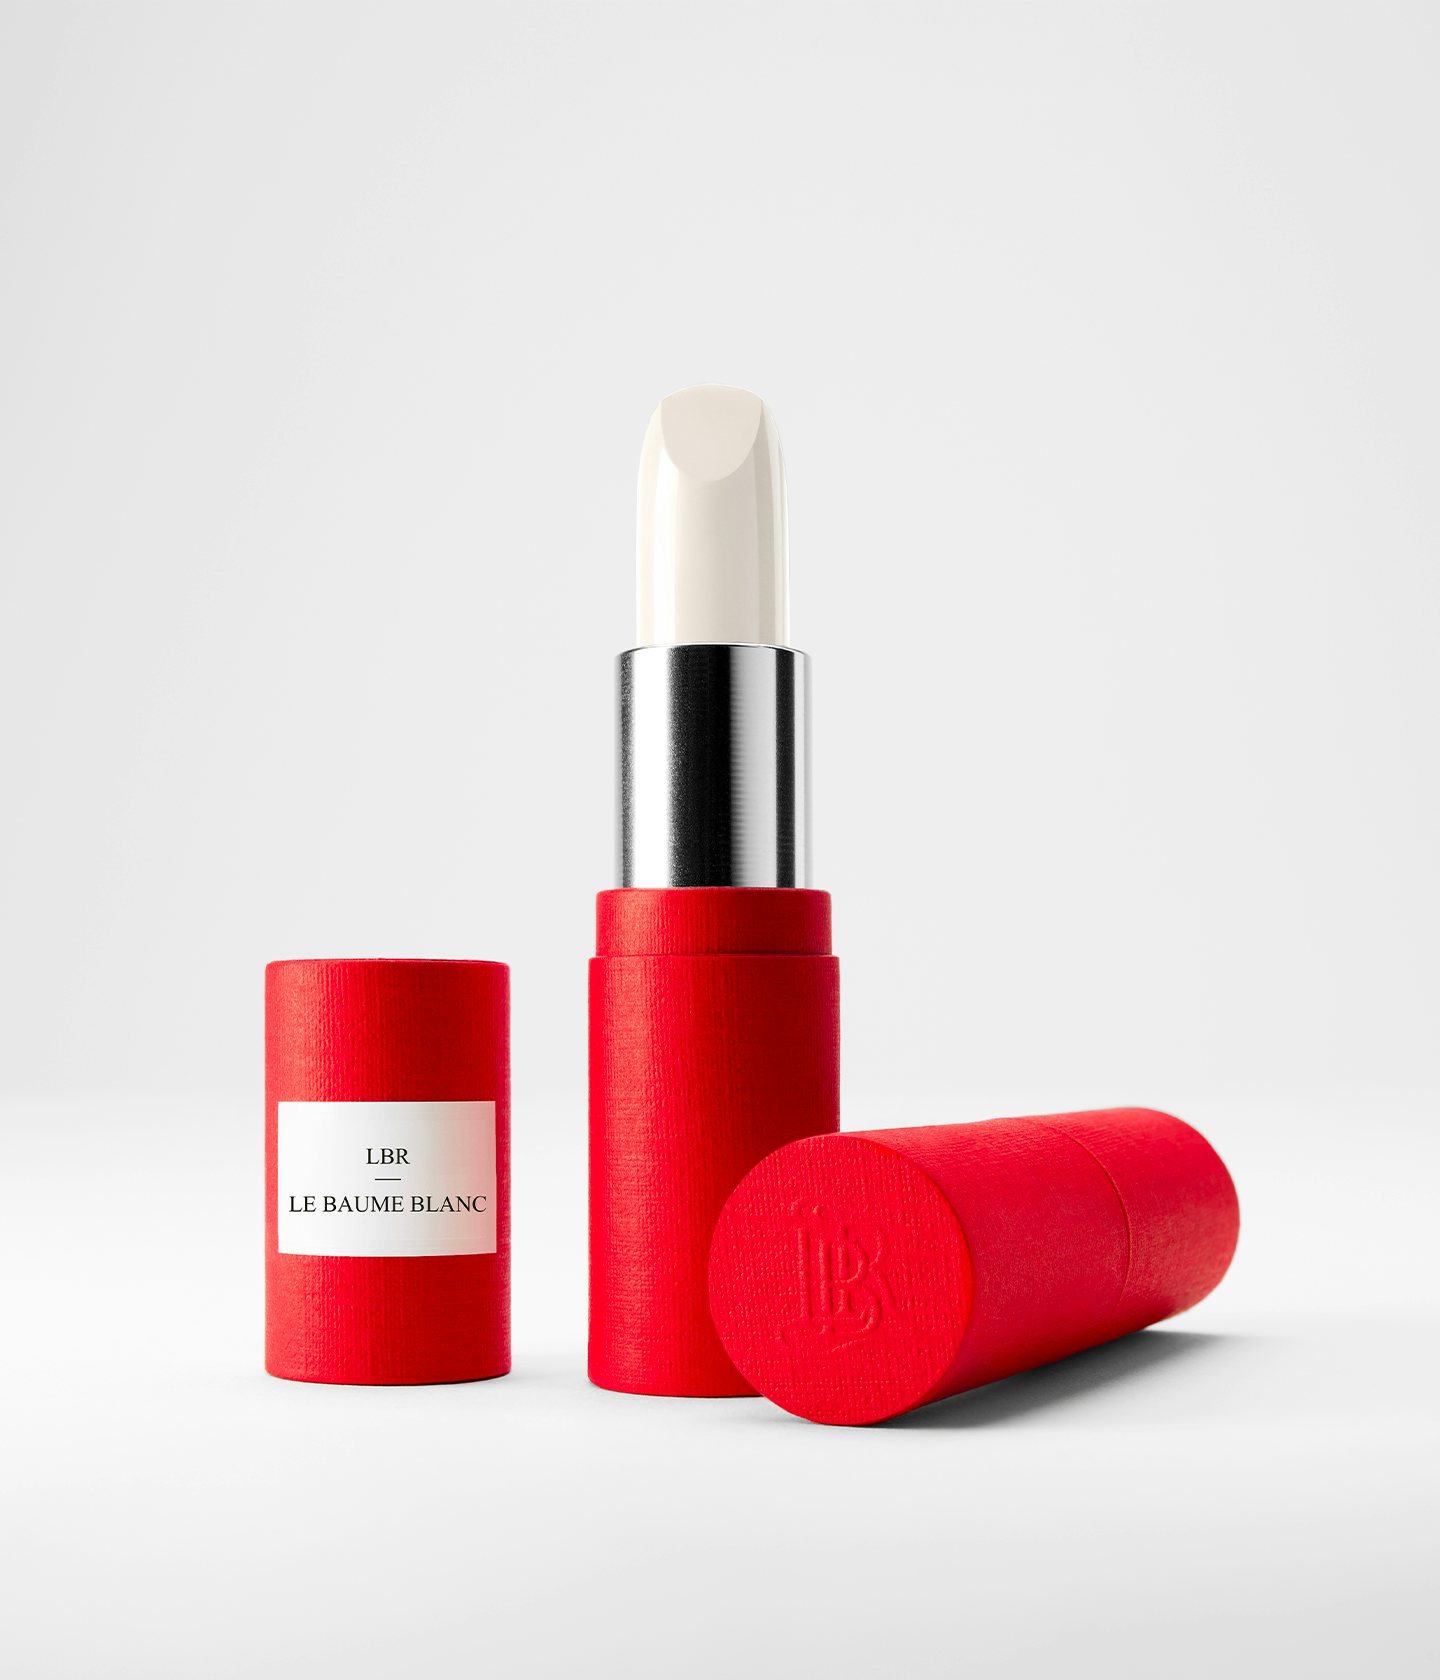 La bouche rouge White balm lipstick in the red paper case